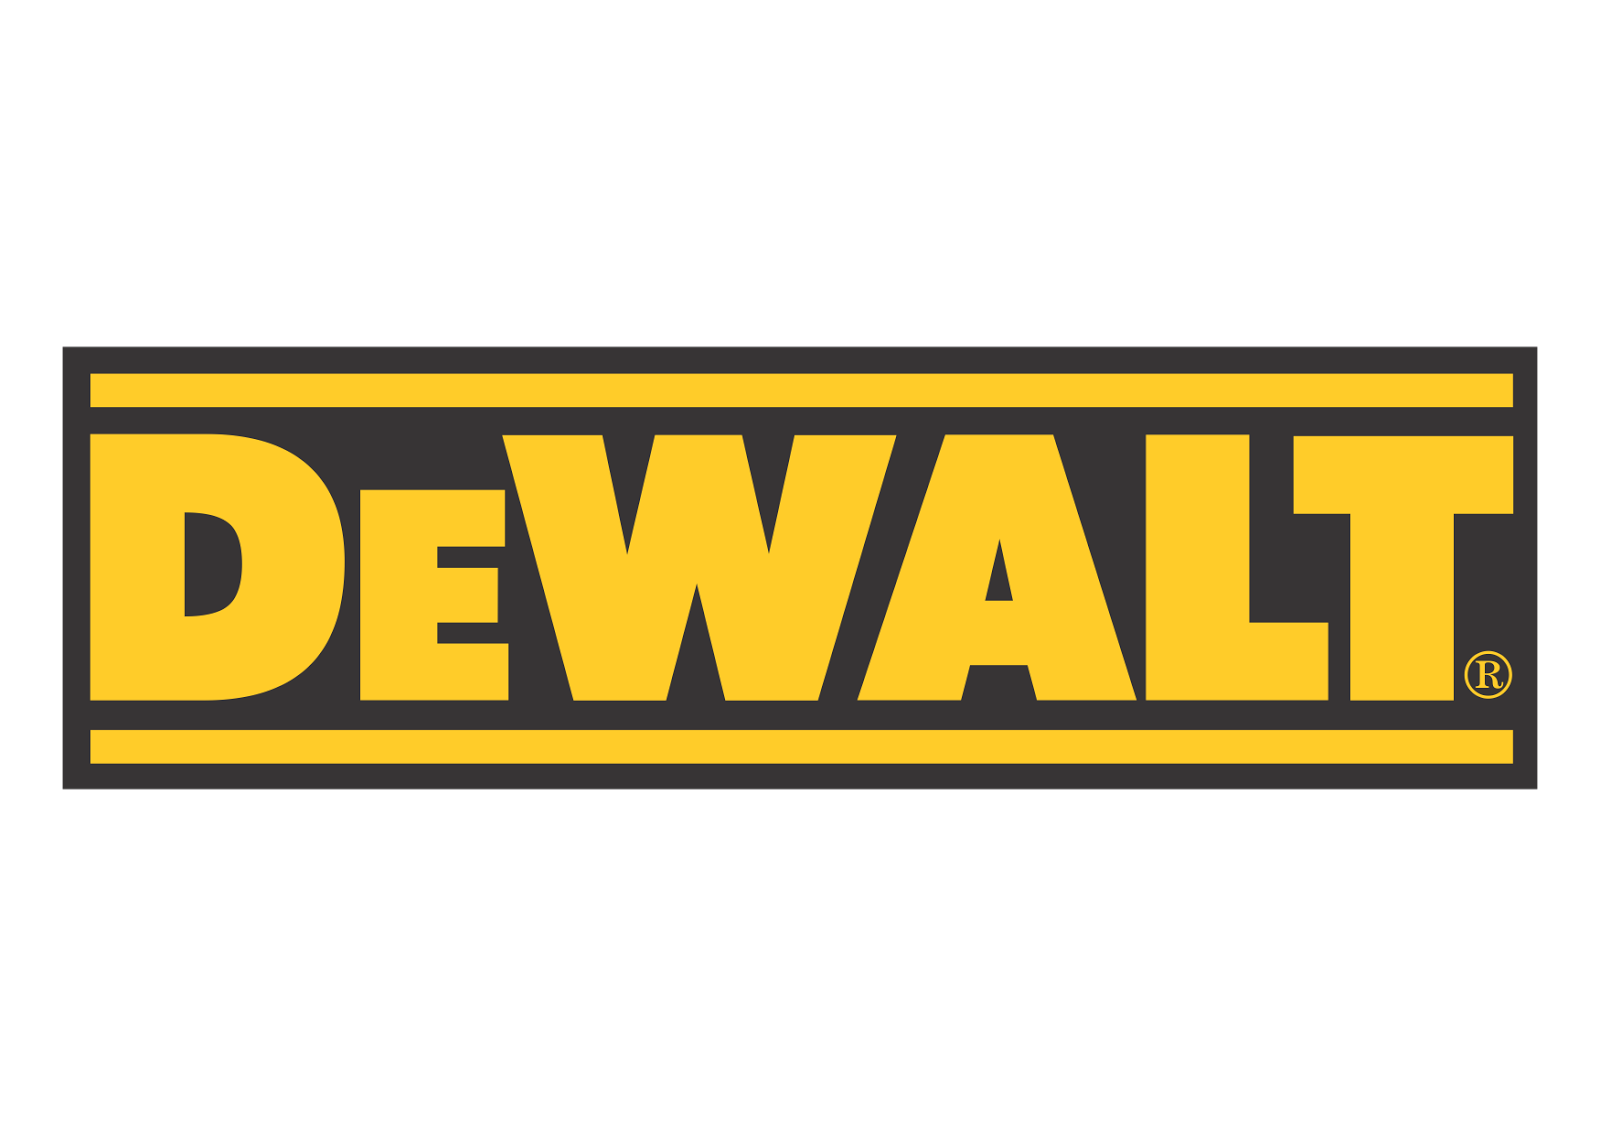 Dewalt Logo Vector Free Vector Logos Download. Dewalt tools, Dewalt, Dewalt power tools